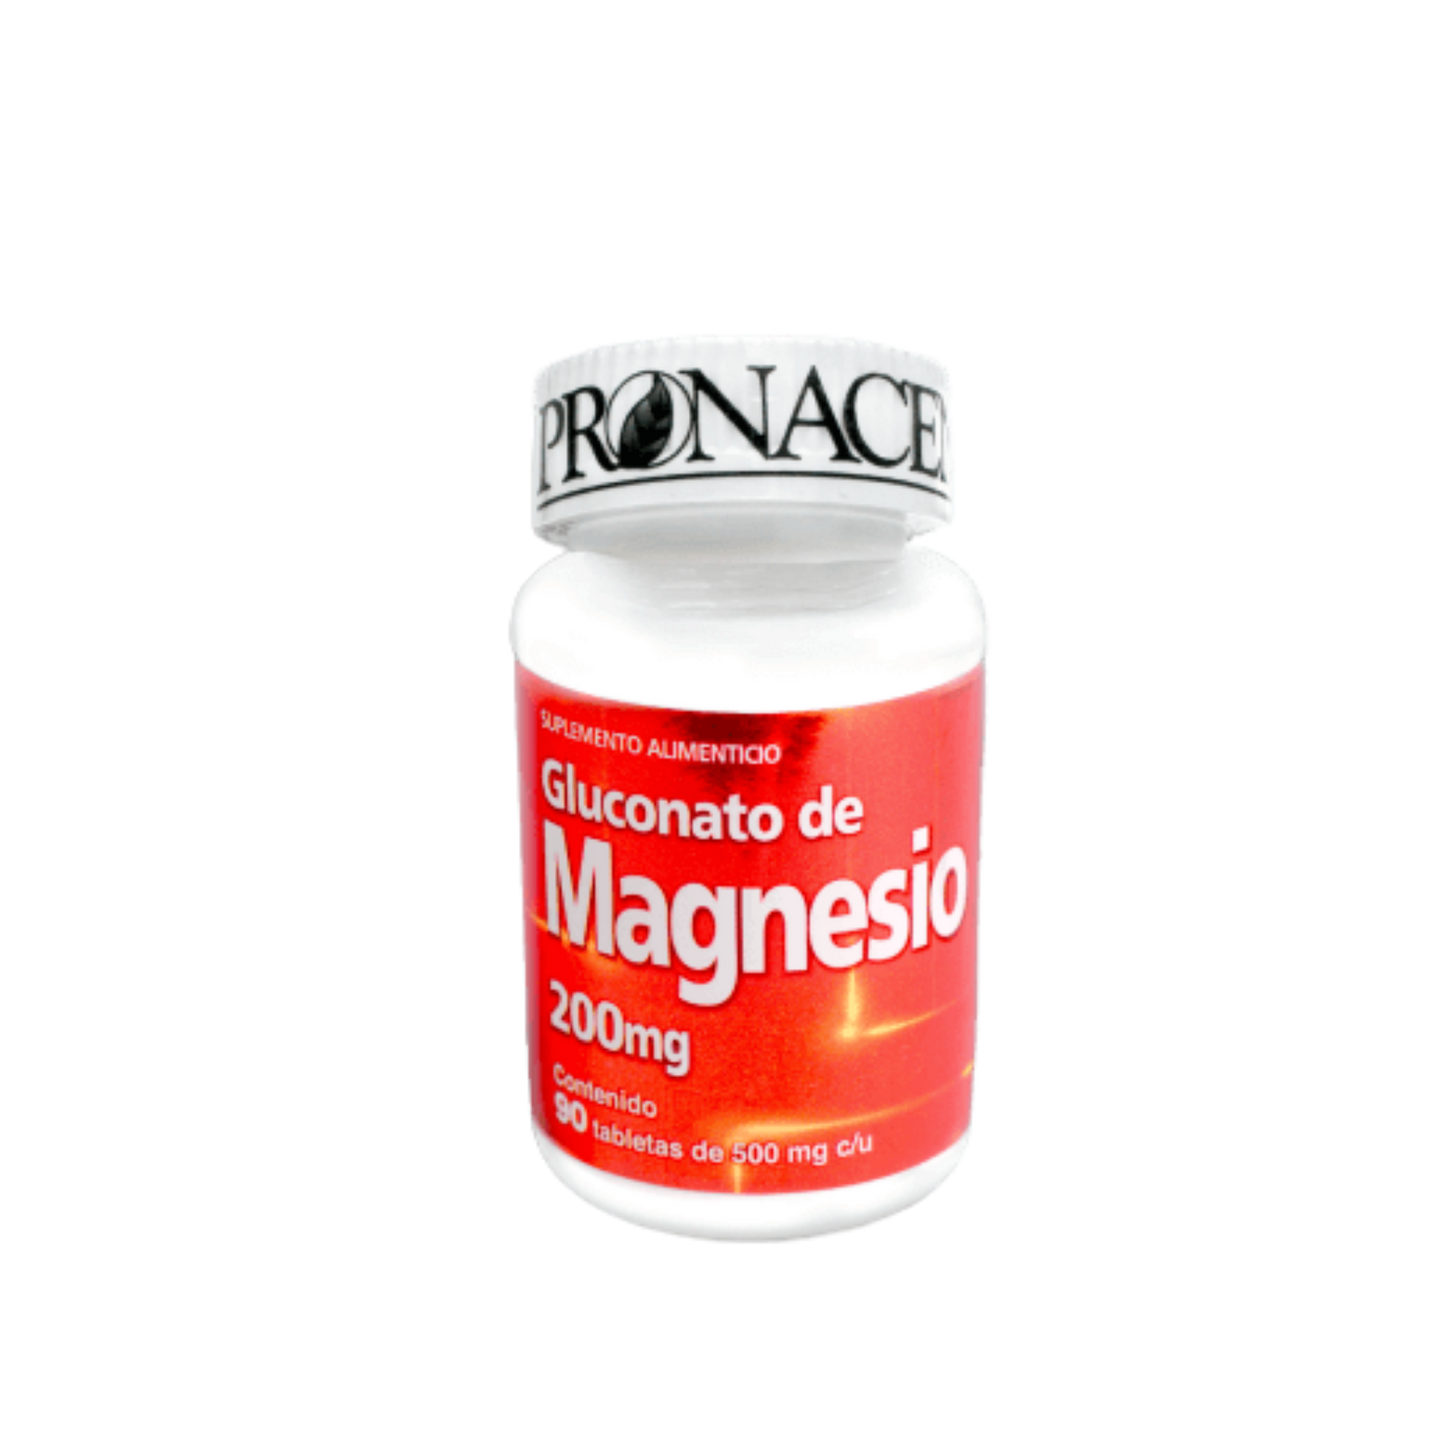 Gluconato de Magnesio